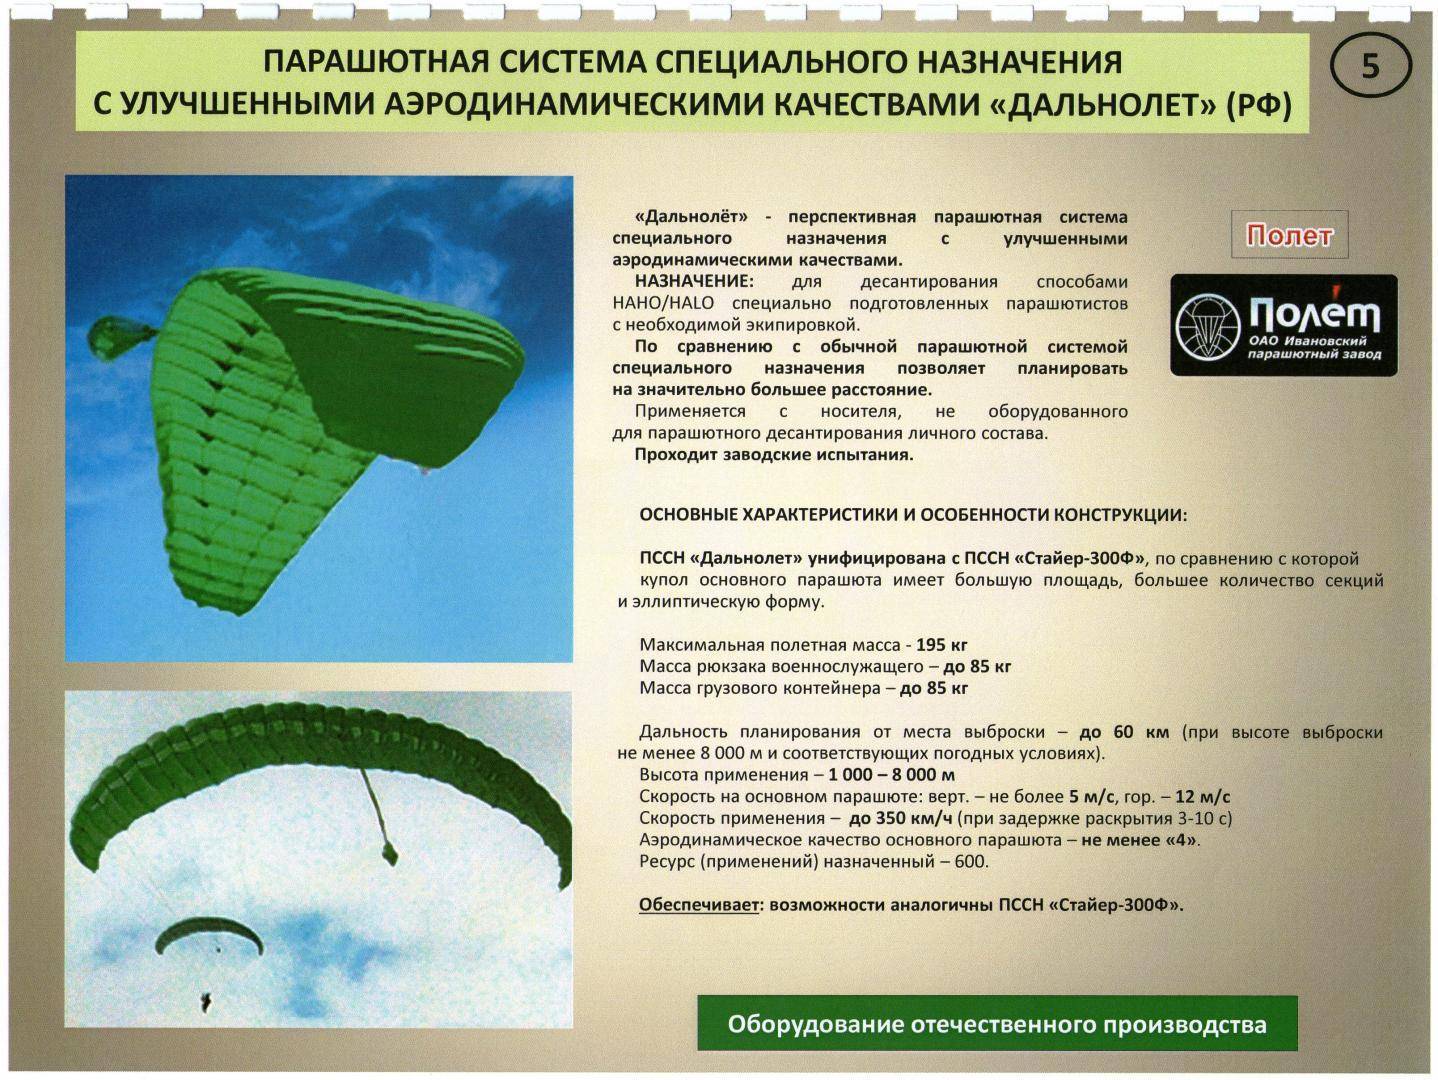 Технические характеристики и особенности парашюта д-6, порядок укладки